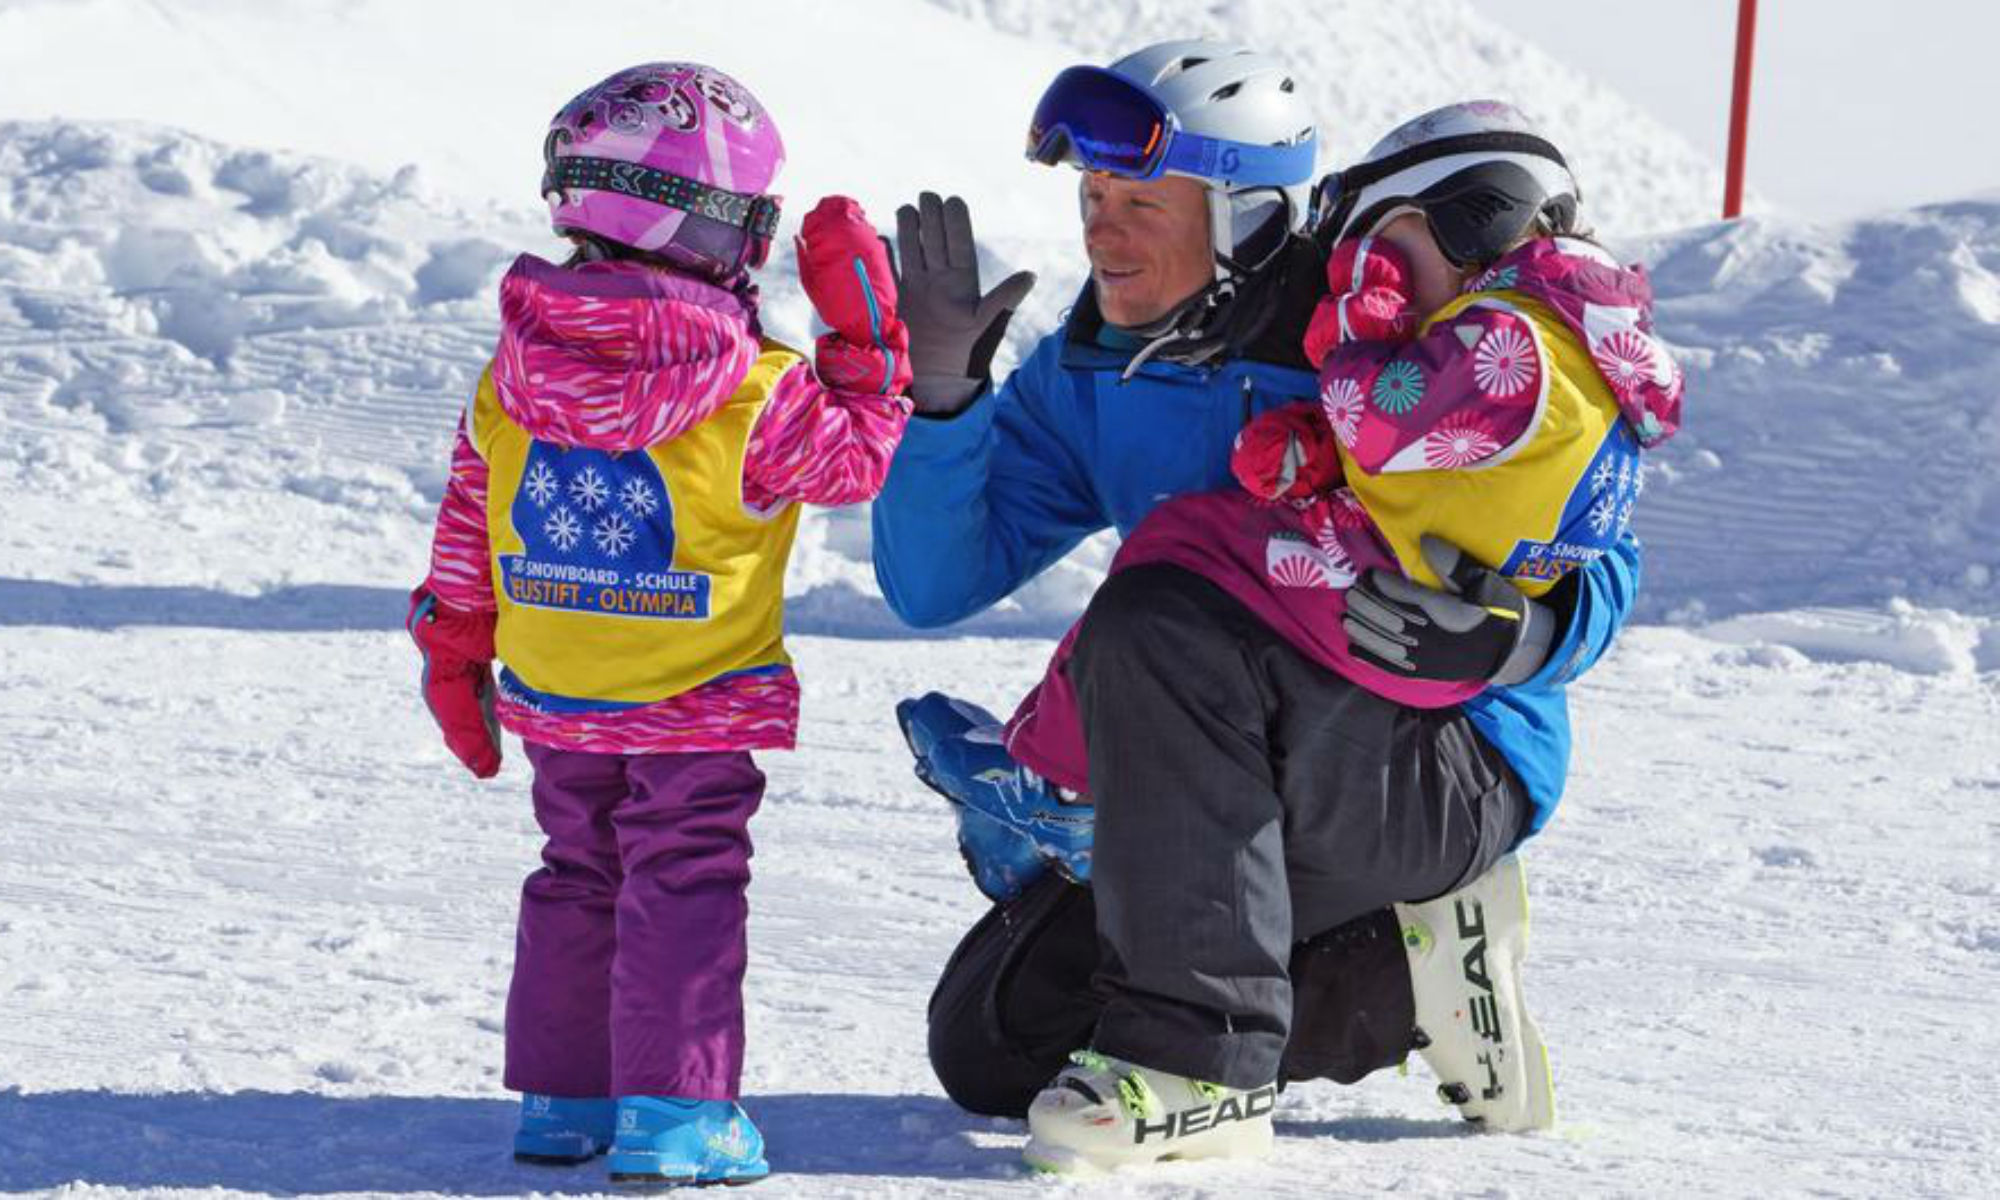 Ein Skilehrer klatscht mit einem Kind auf einer sonnigen Piste am Stubaier Gletscher ab, während er ein zweites Kind im Arm hält.